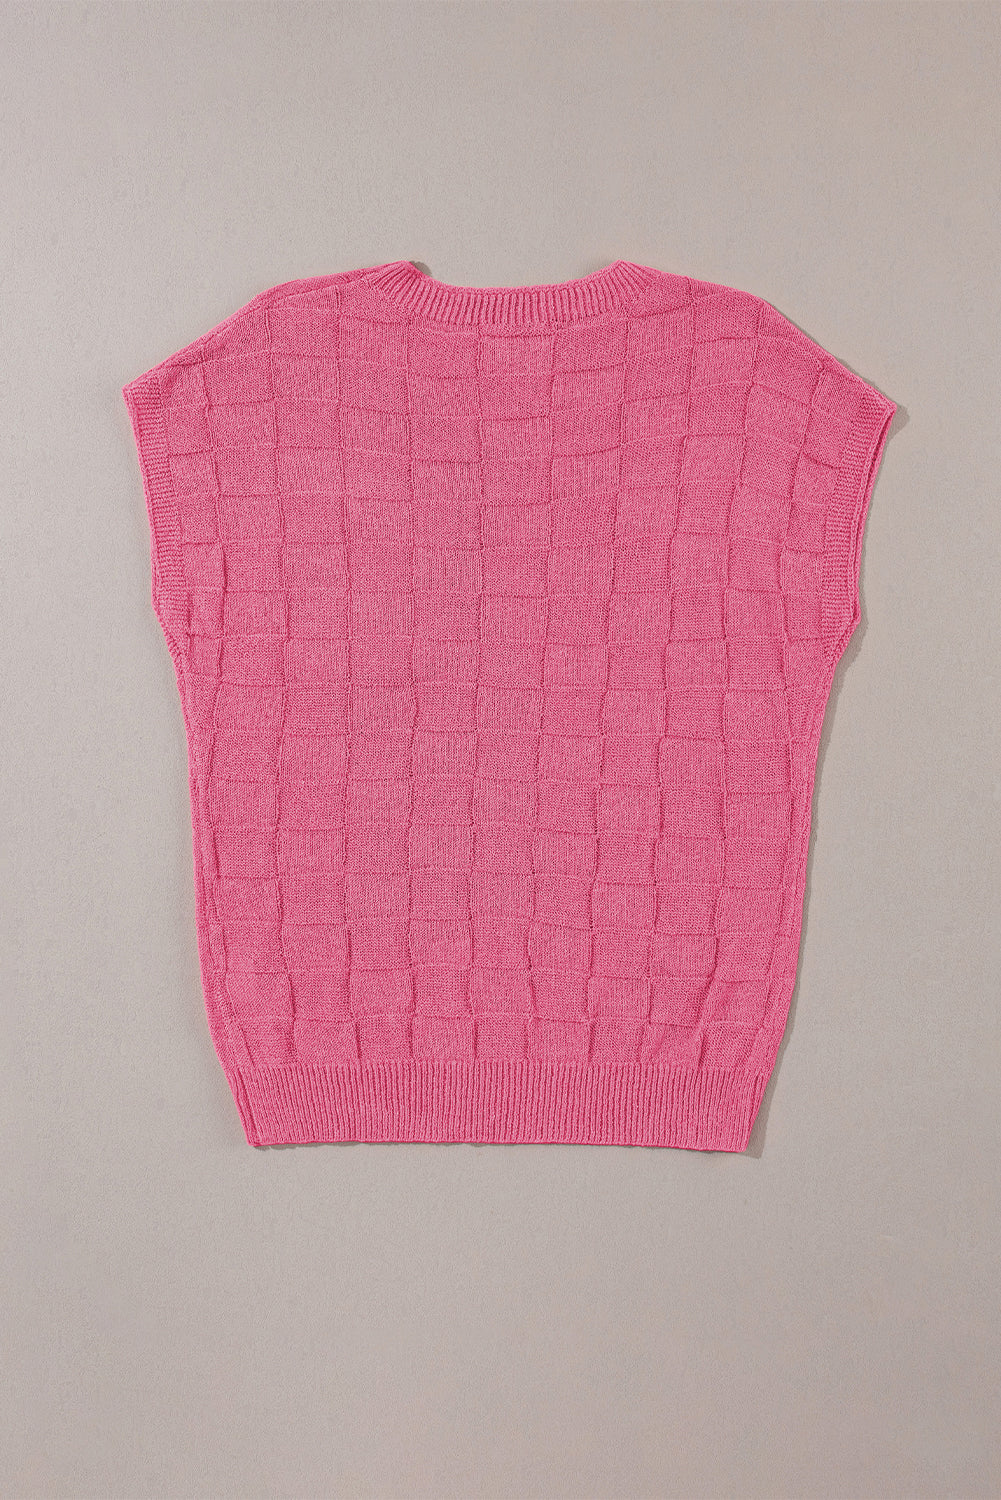 Svijetlo ružičasti pleteni pulover kratkih rukava s rešetkastom teksturom